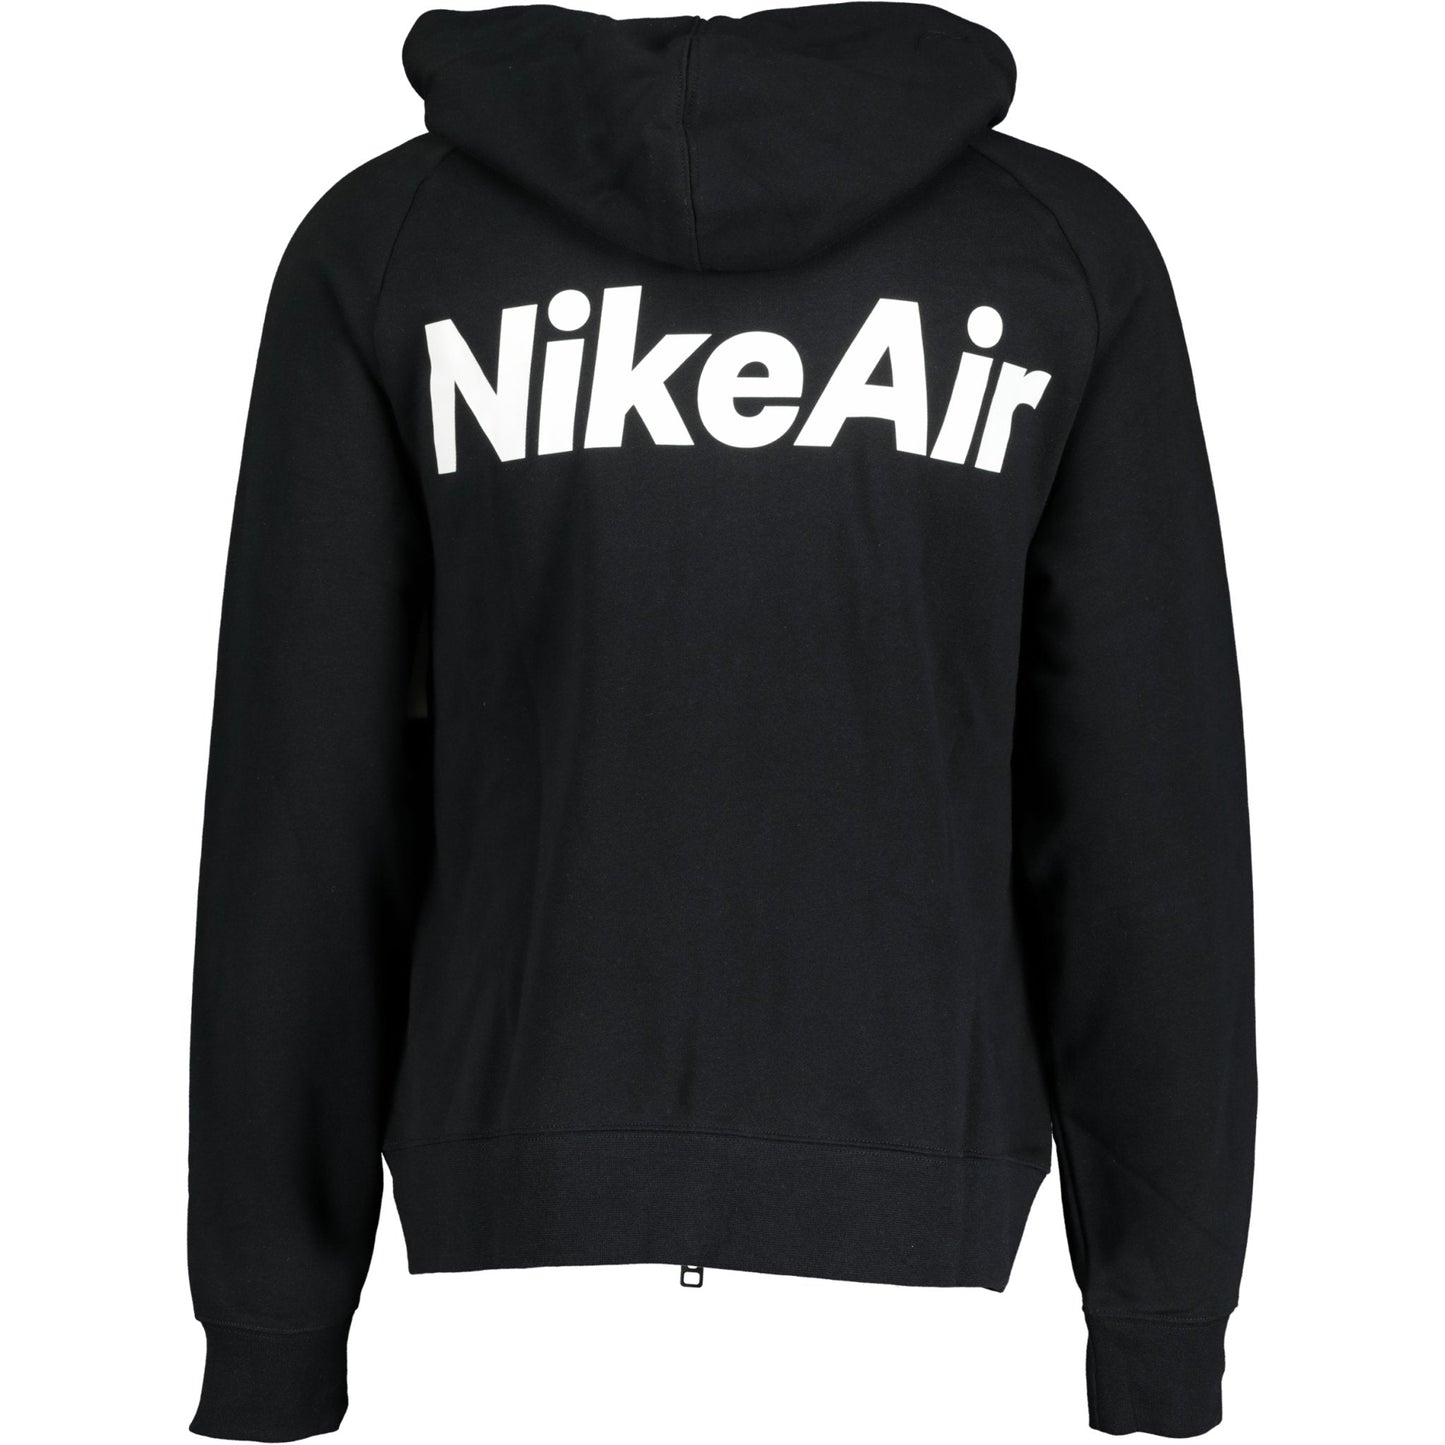 Nike Air Black & White Hoodie - LinkFashionco